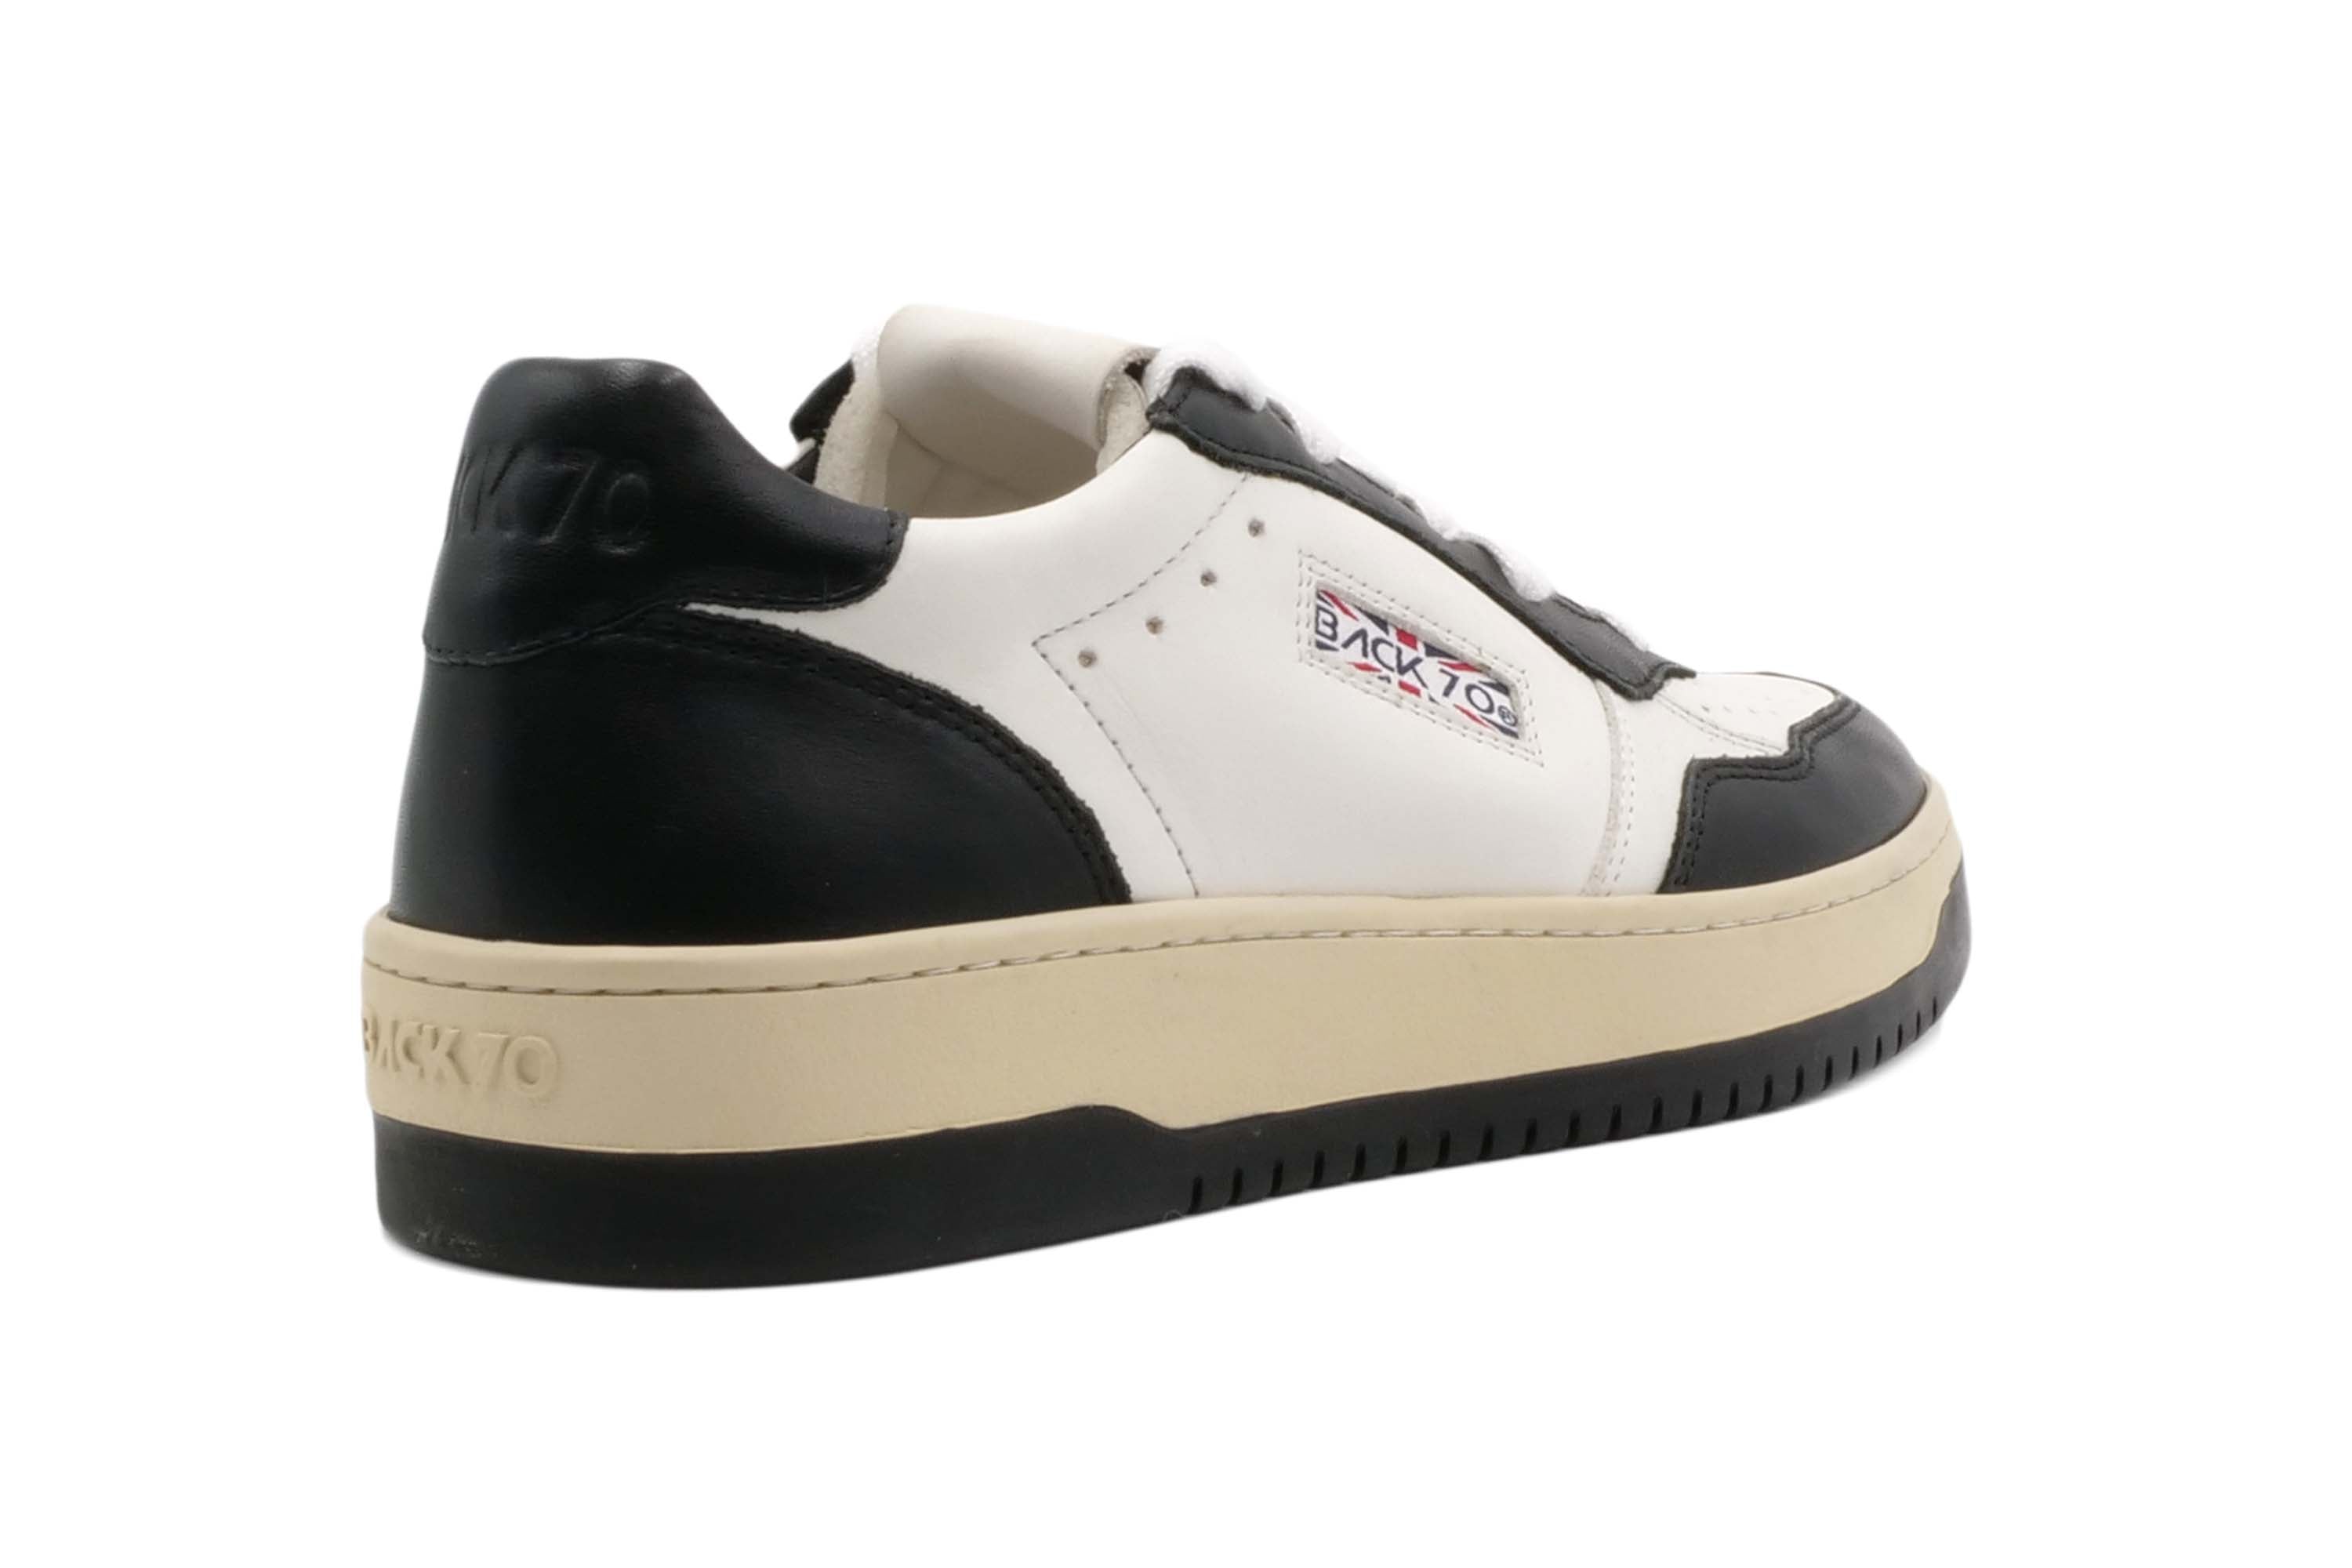 Sneaker BACK 70 SLAM White/Black - M